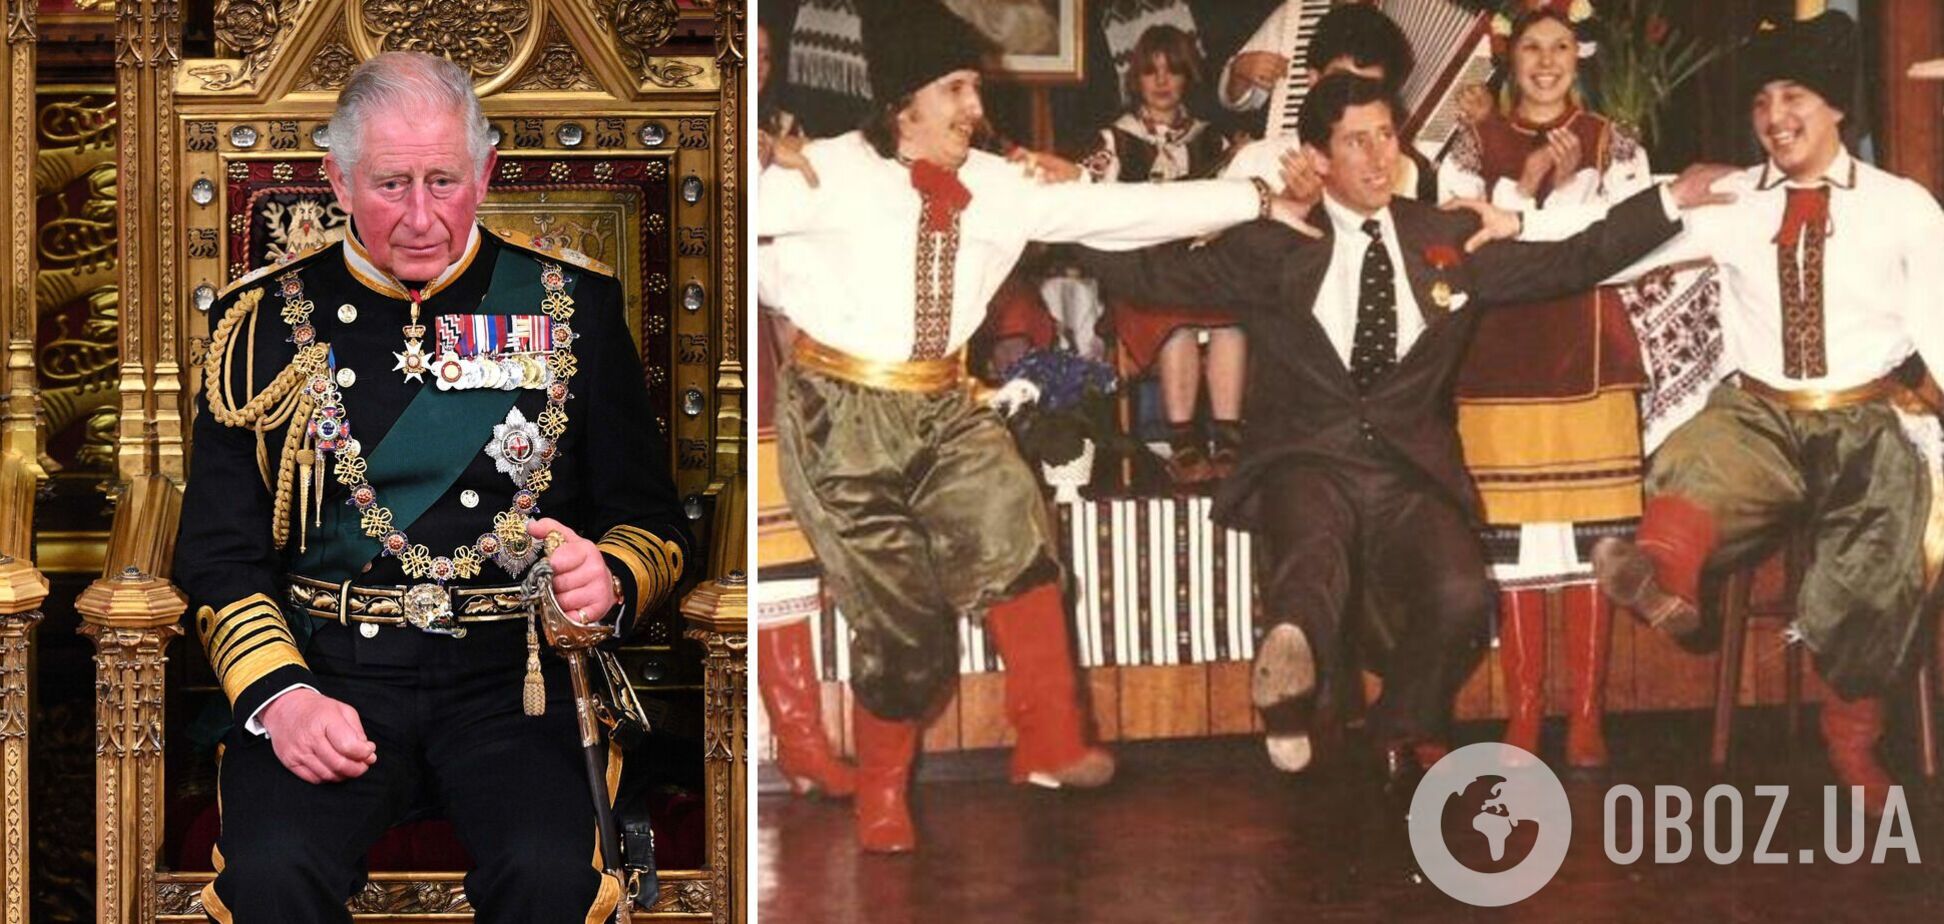 Сеть покорило фото, как будущий король Великобритании Чарльз ІІІ танцует украинский гопак